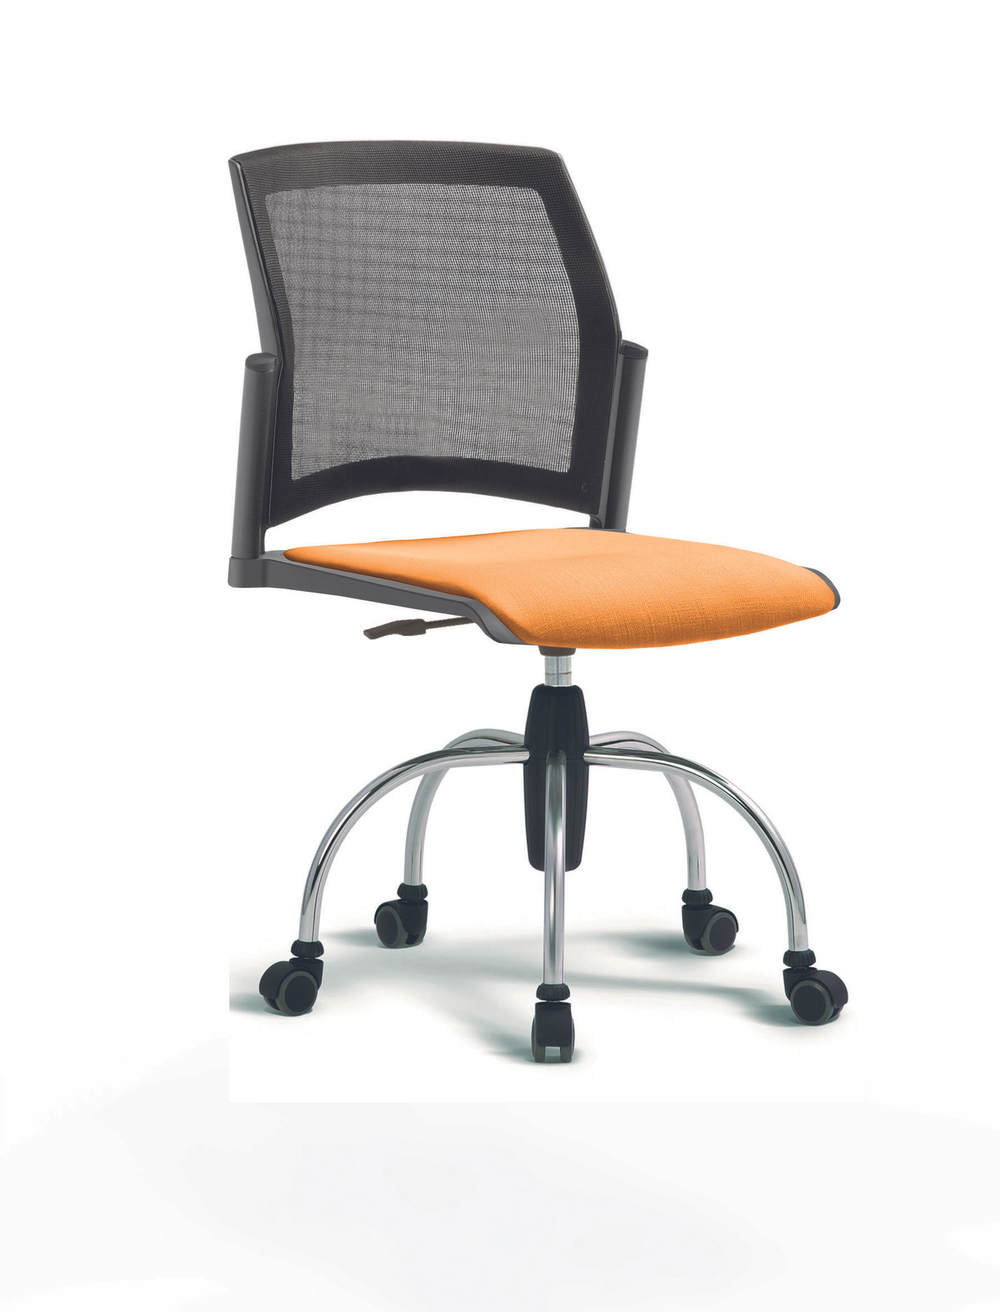 Кресло Rewind каркас хромированный, пластик серый, база паук хромированная, без подлокотников, сидение оранжевое, спинка-сетка